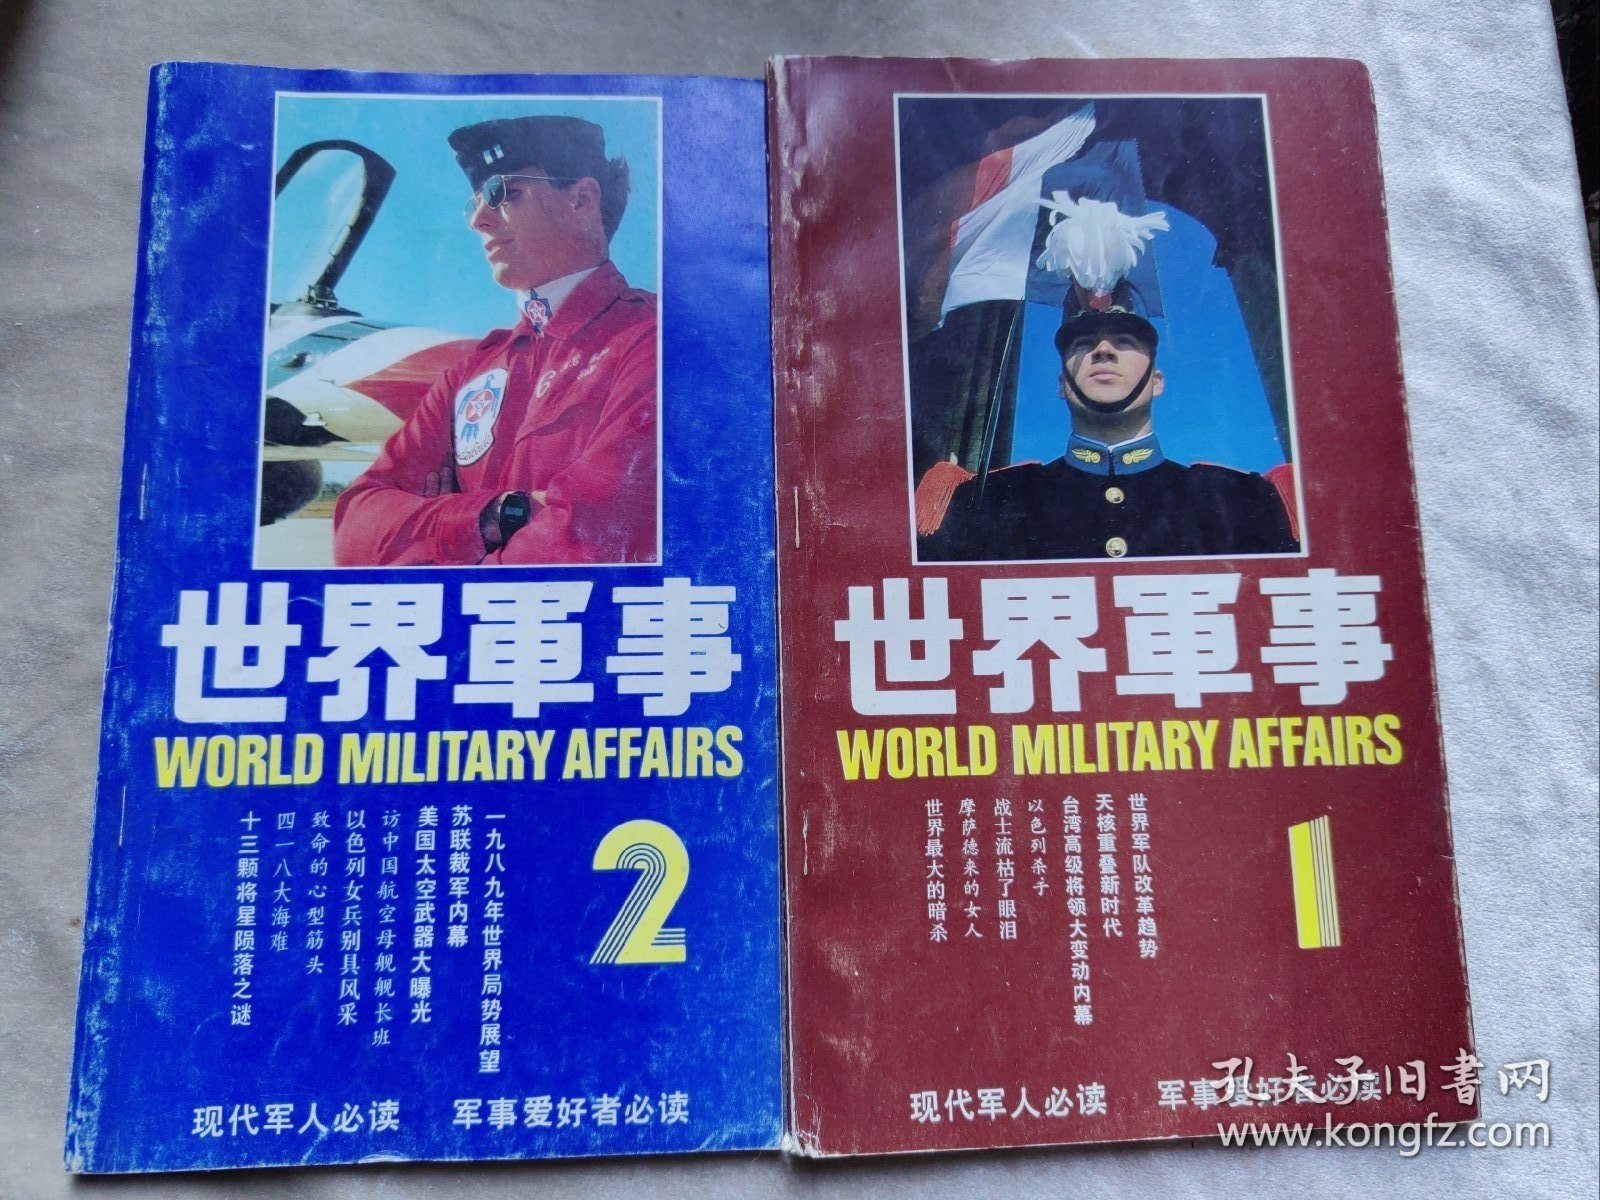 包邮 世界军事1989年第1期 创刊号 世界军事1989年第2期 两本合售